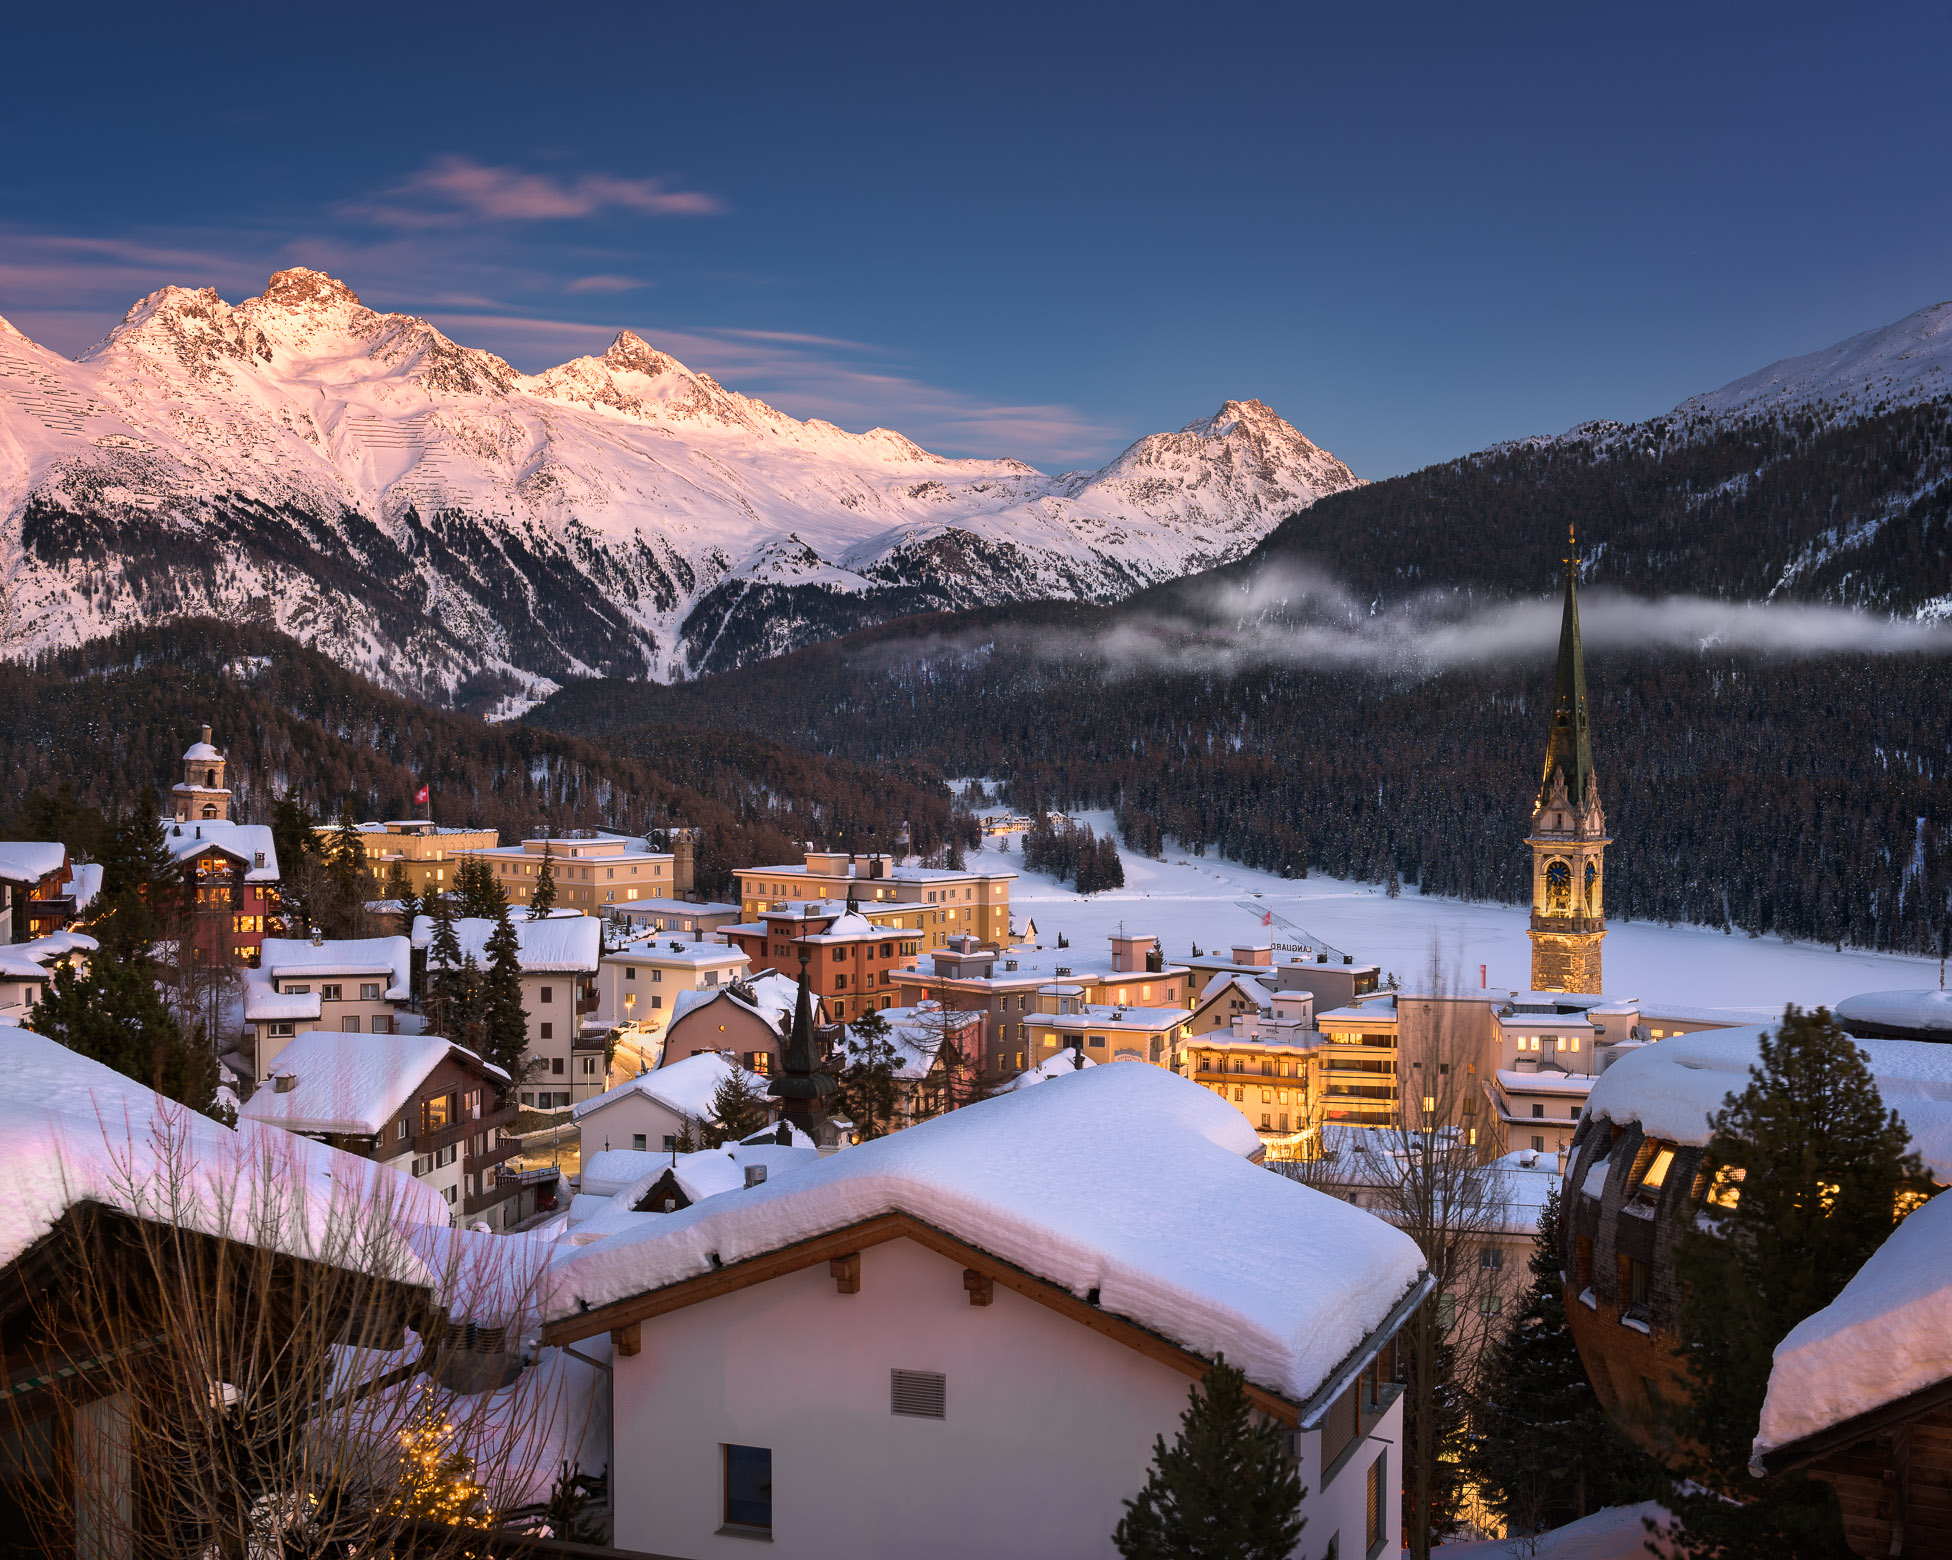 جاهای دیدنی سوئیس و طبیعت سحرانگیزش | Switzerland